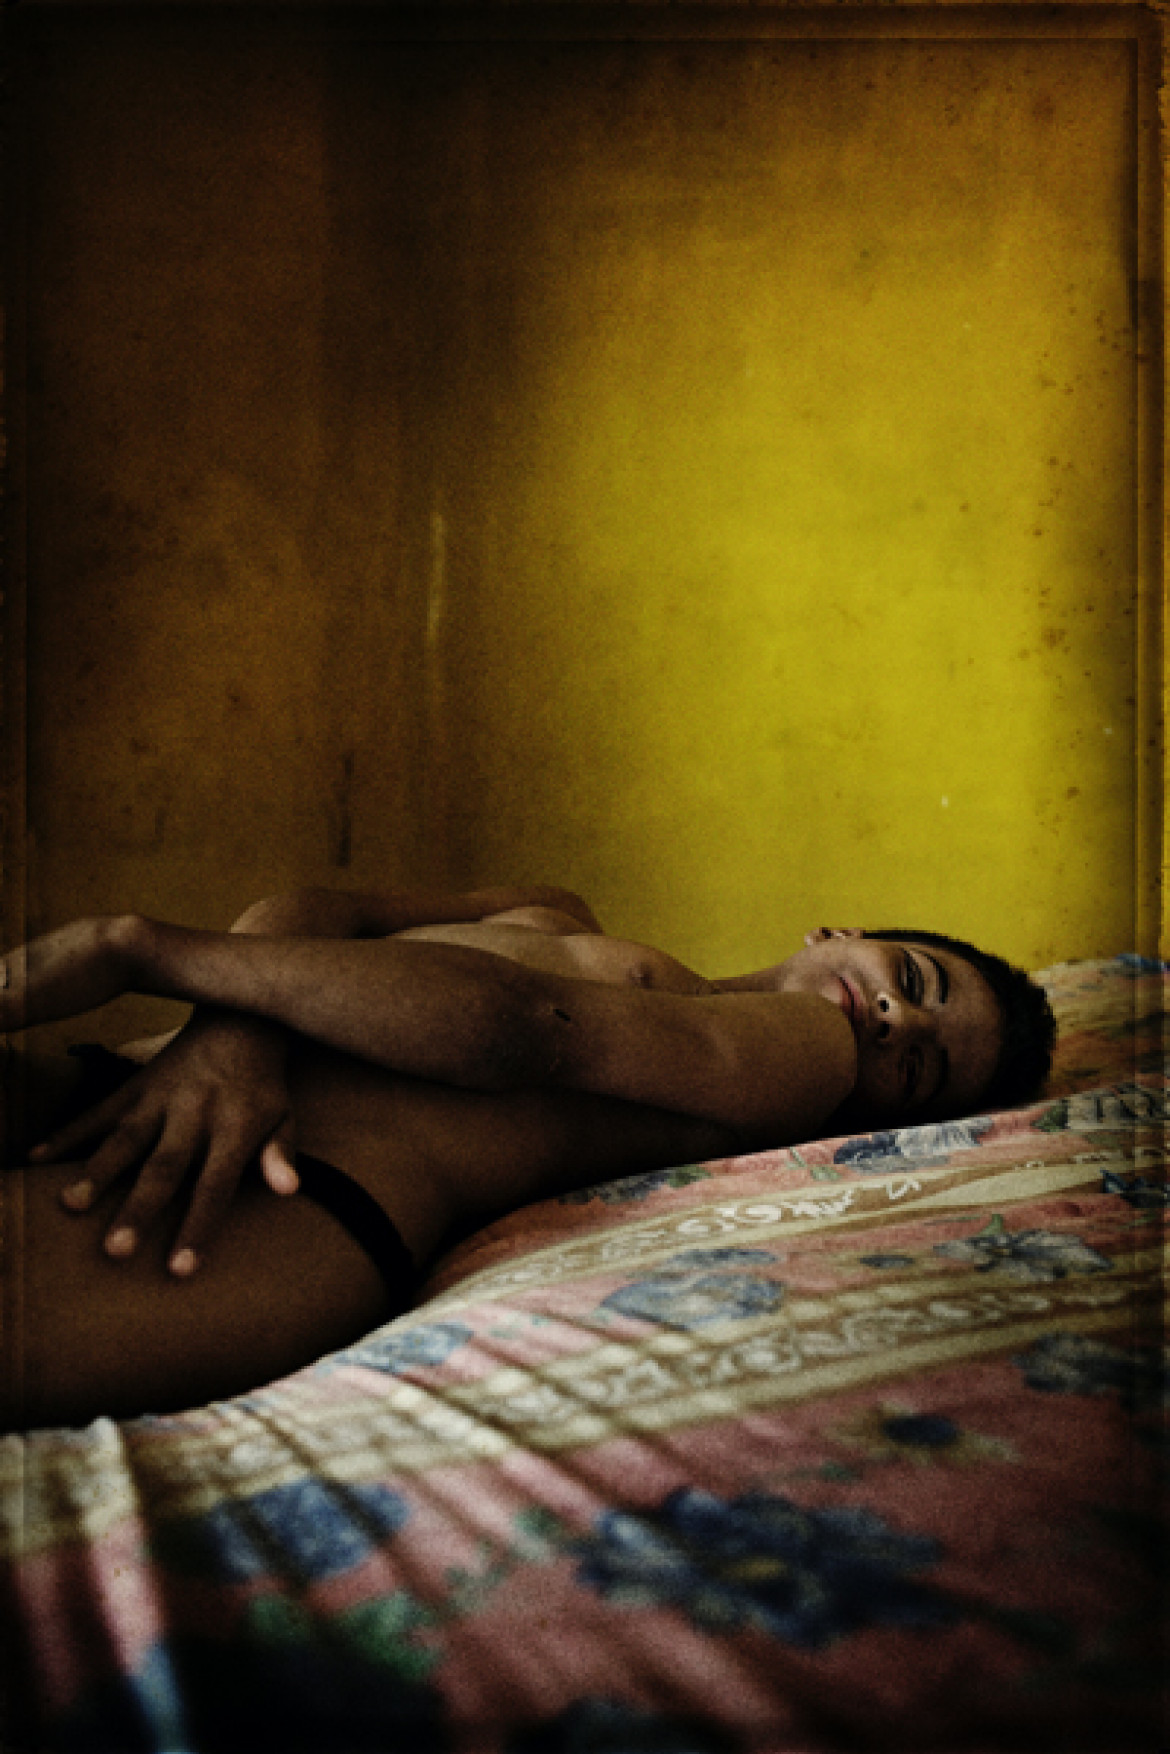 2. nagroda w kategorii Portret (reportaż) Pep Bonet, Hiszpania, Noor, Wymuszona tożsamość: Prostytucja transseksualistów, Honduras